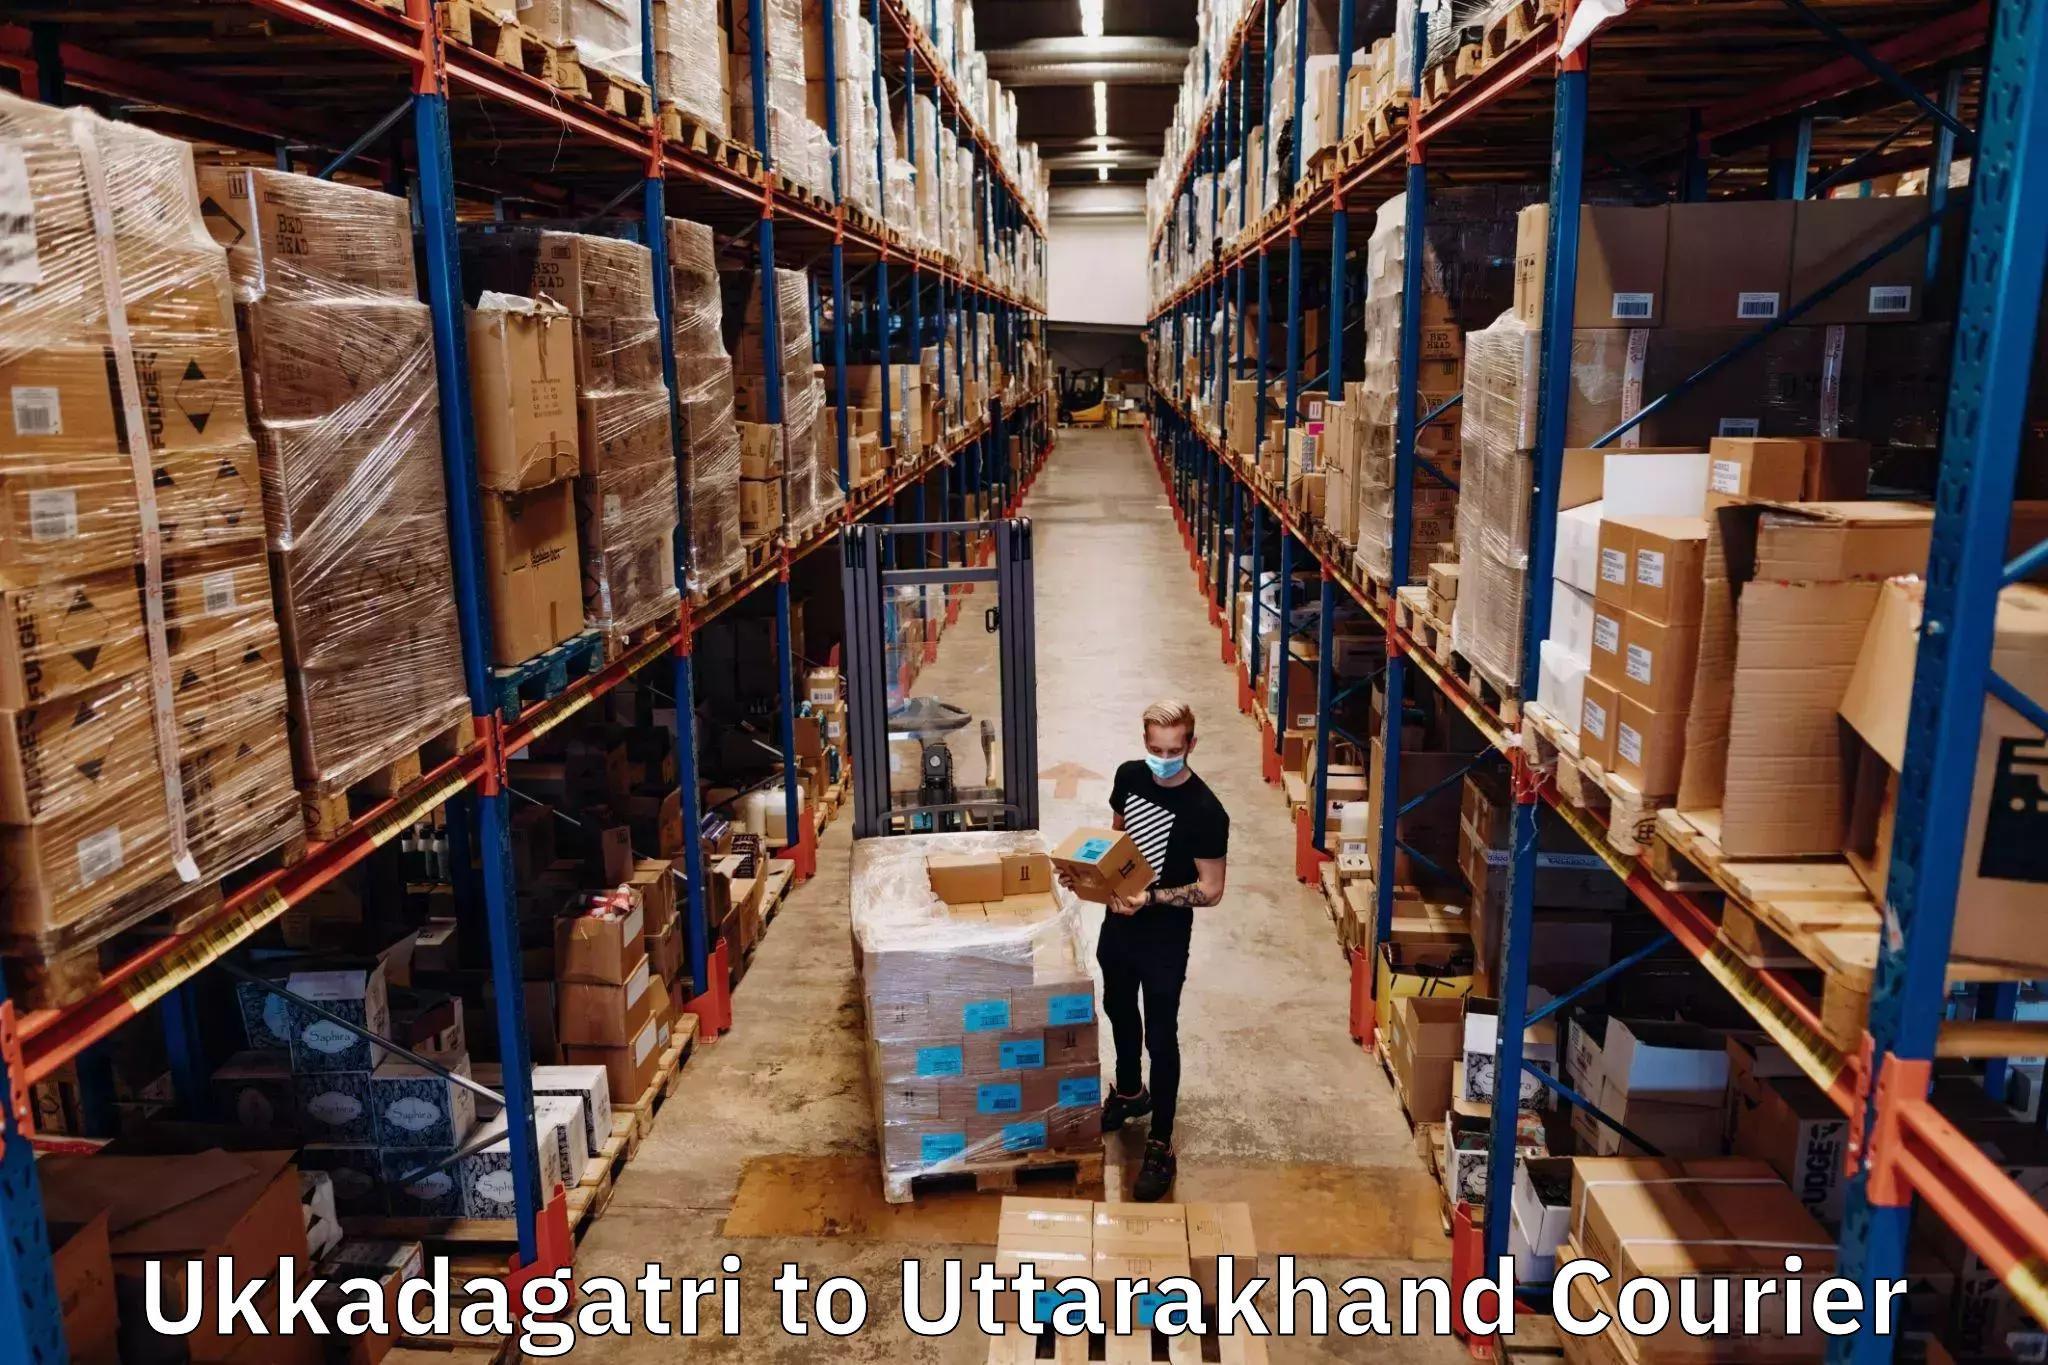 High-speed logistics services in Ukkadagatri to Udham Singh Nagar